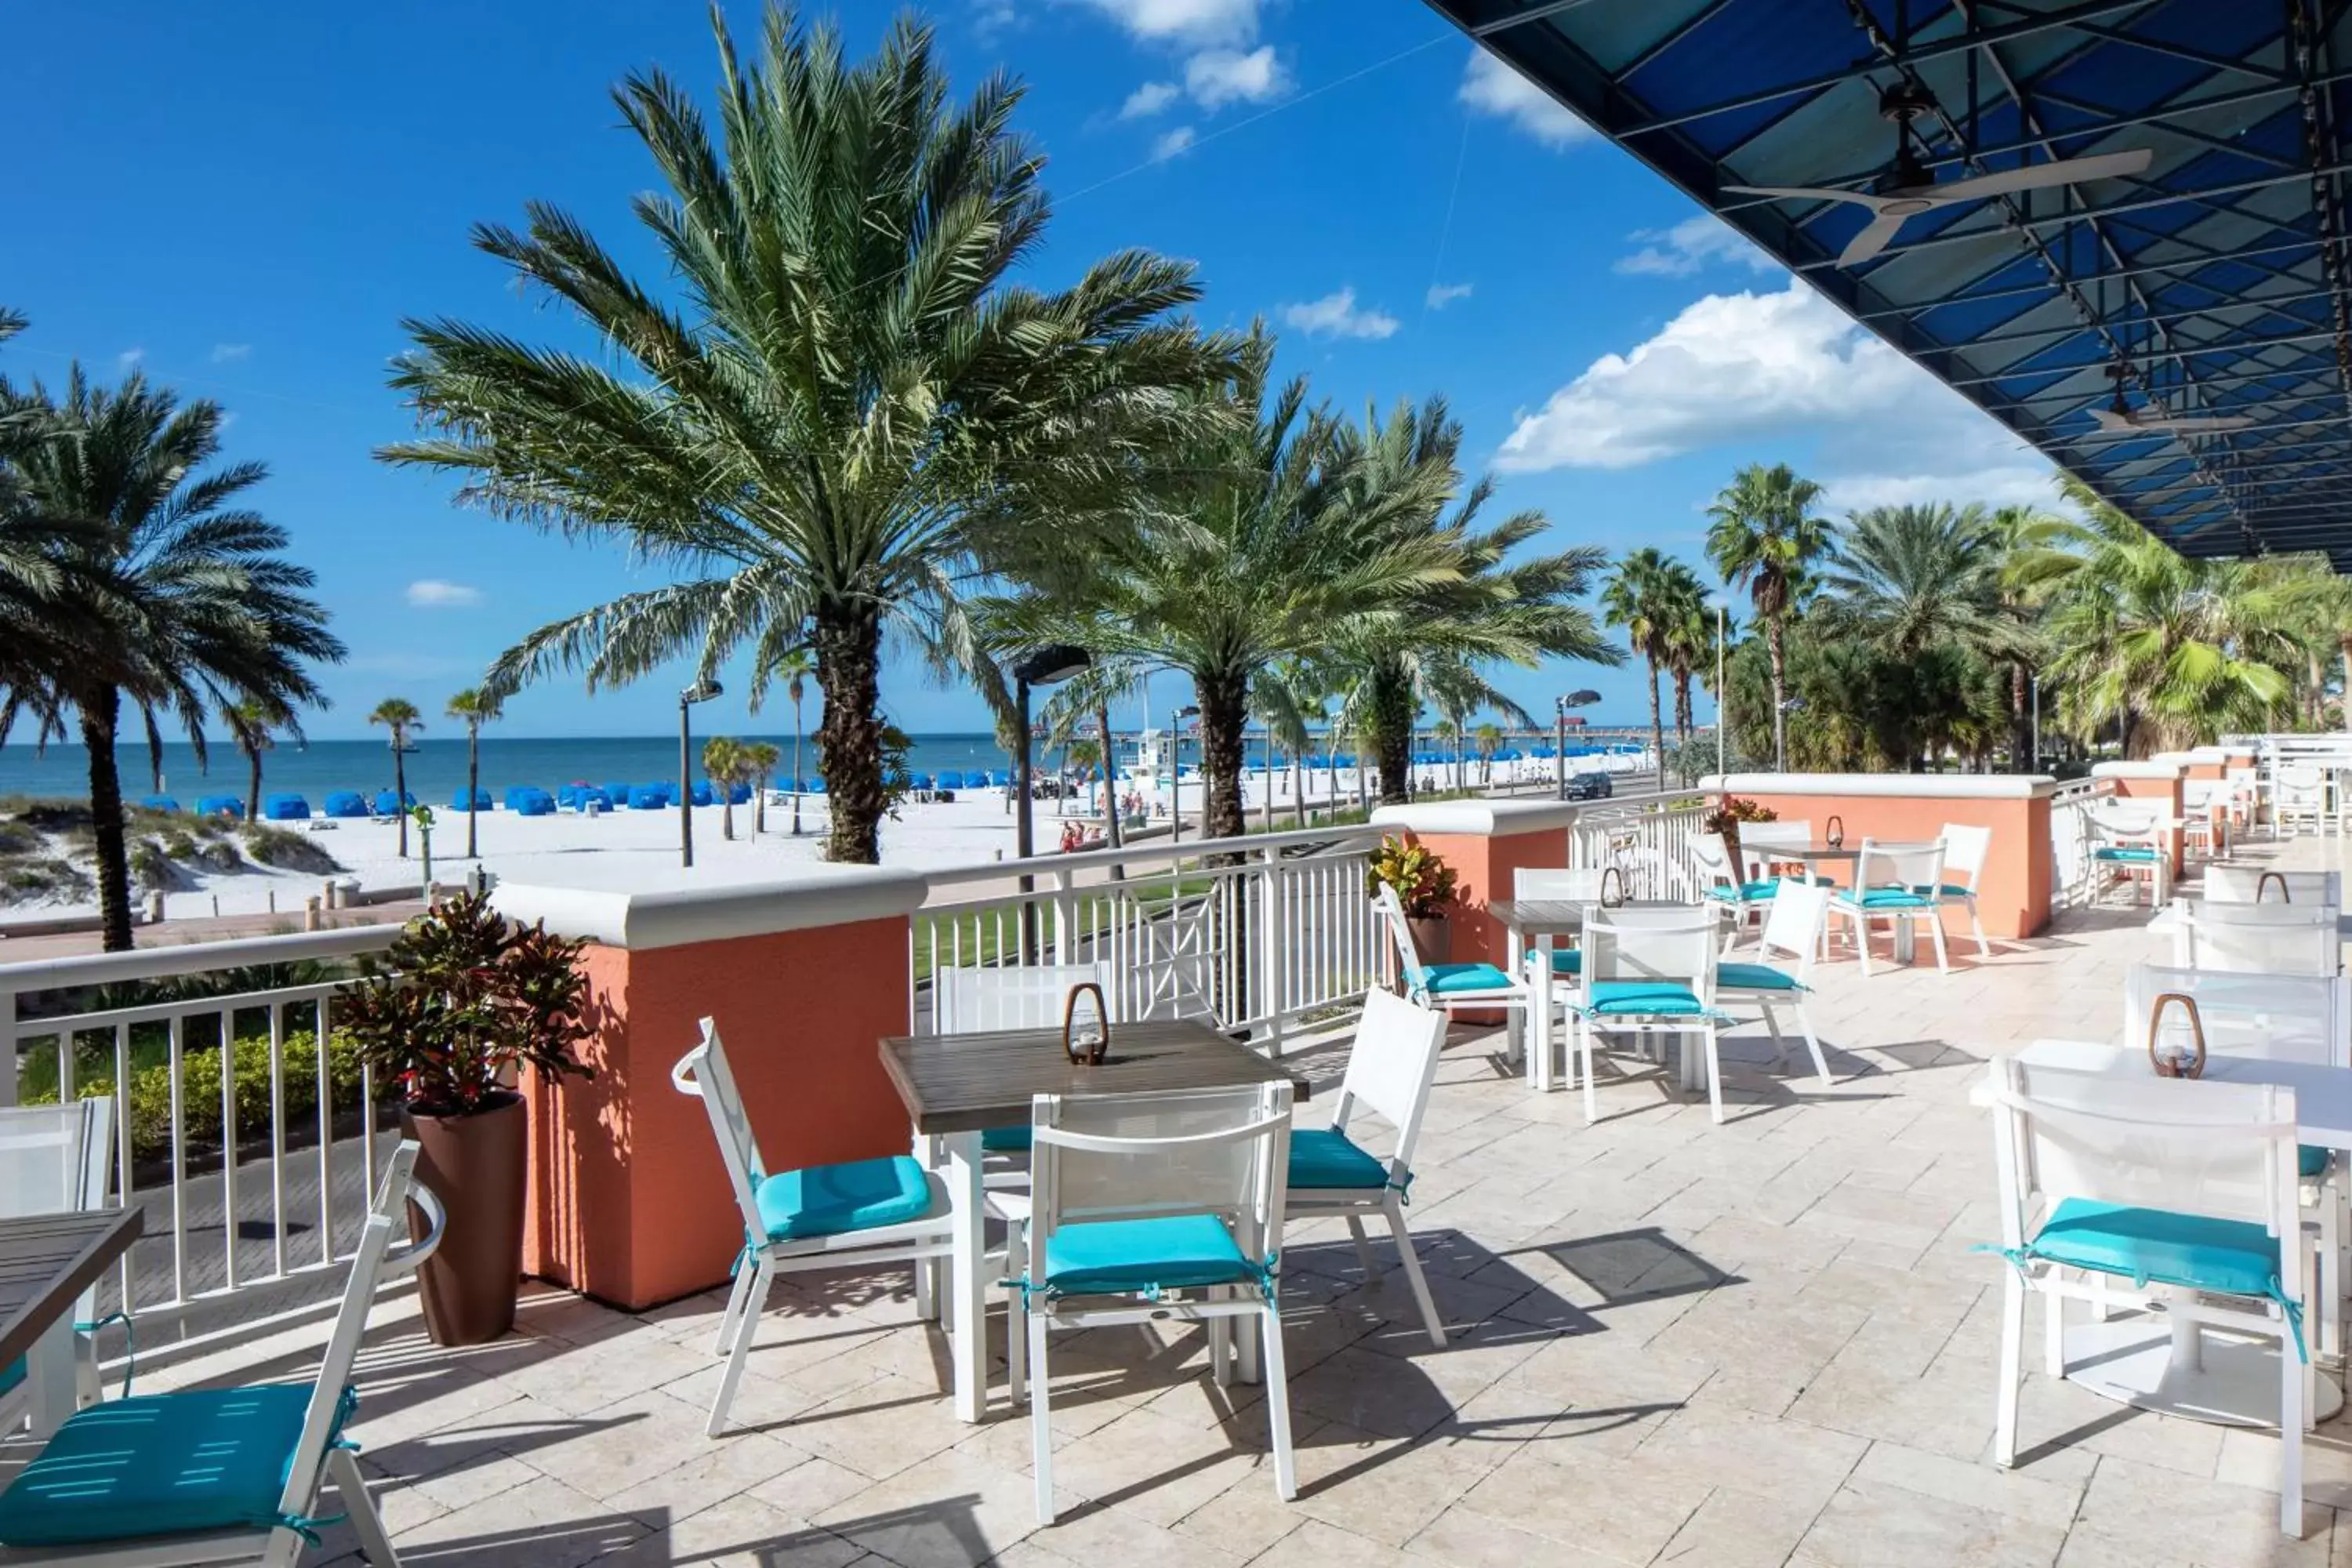 Restaurant/places to eat in Hyatt Regency Clearwater Beach Resort & Spa